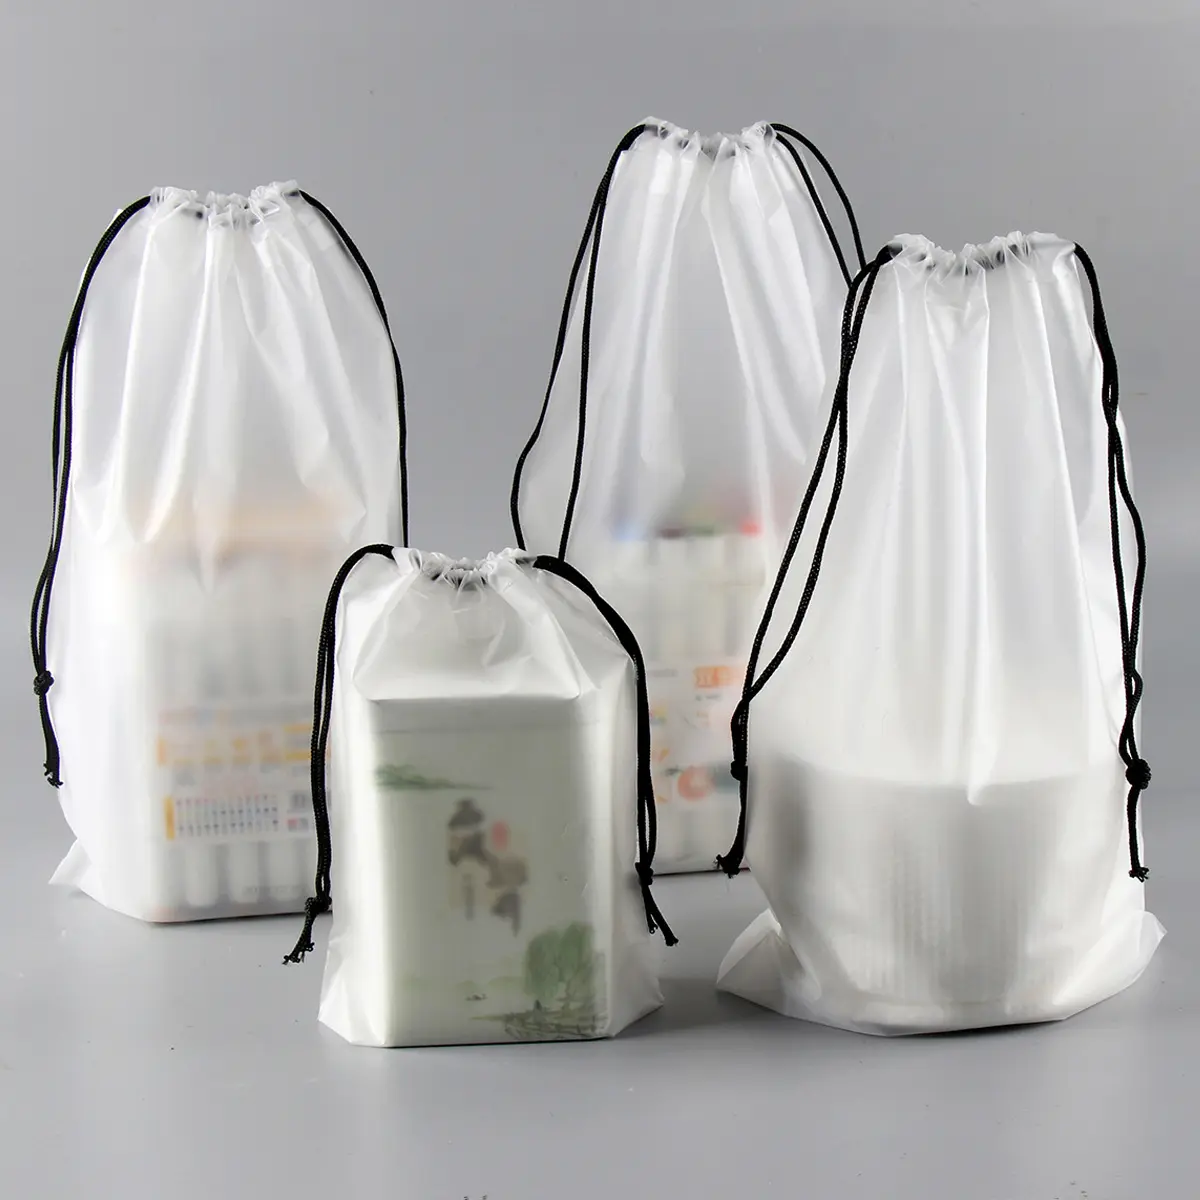 Биоразлагаемый прозрачный пластиковый мешочек для покупок, упаковка для одежды и футболок, водонепроницаемый матовый мешок на шнурке